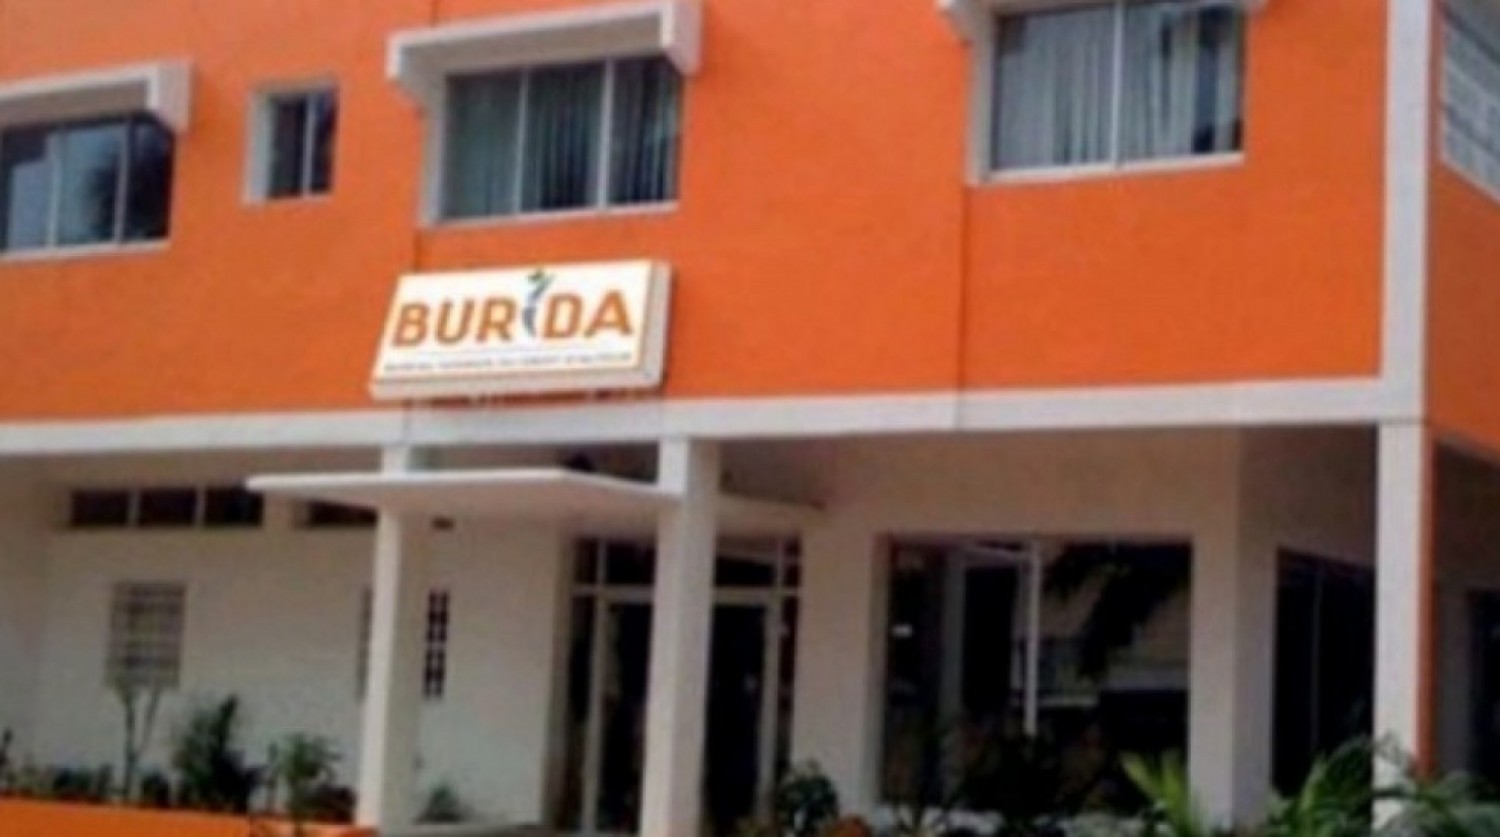 Côte d'Ivoire : Affaire tension entre la Direction Régionale du Burida et des hôteliers qui dénoncent un harcèlement et des abus de pouvoir, deux plaintes déposées, le Droit de Réponse du DG Ouattara